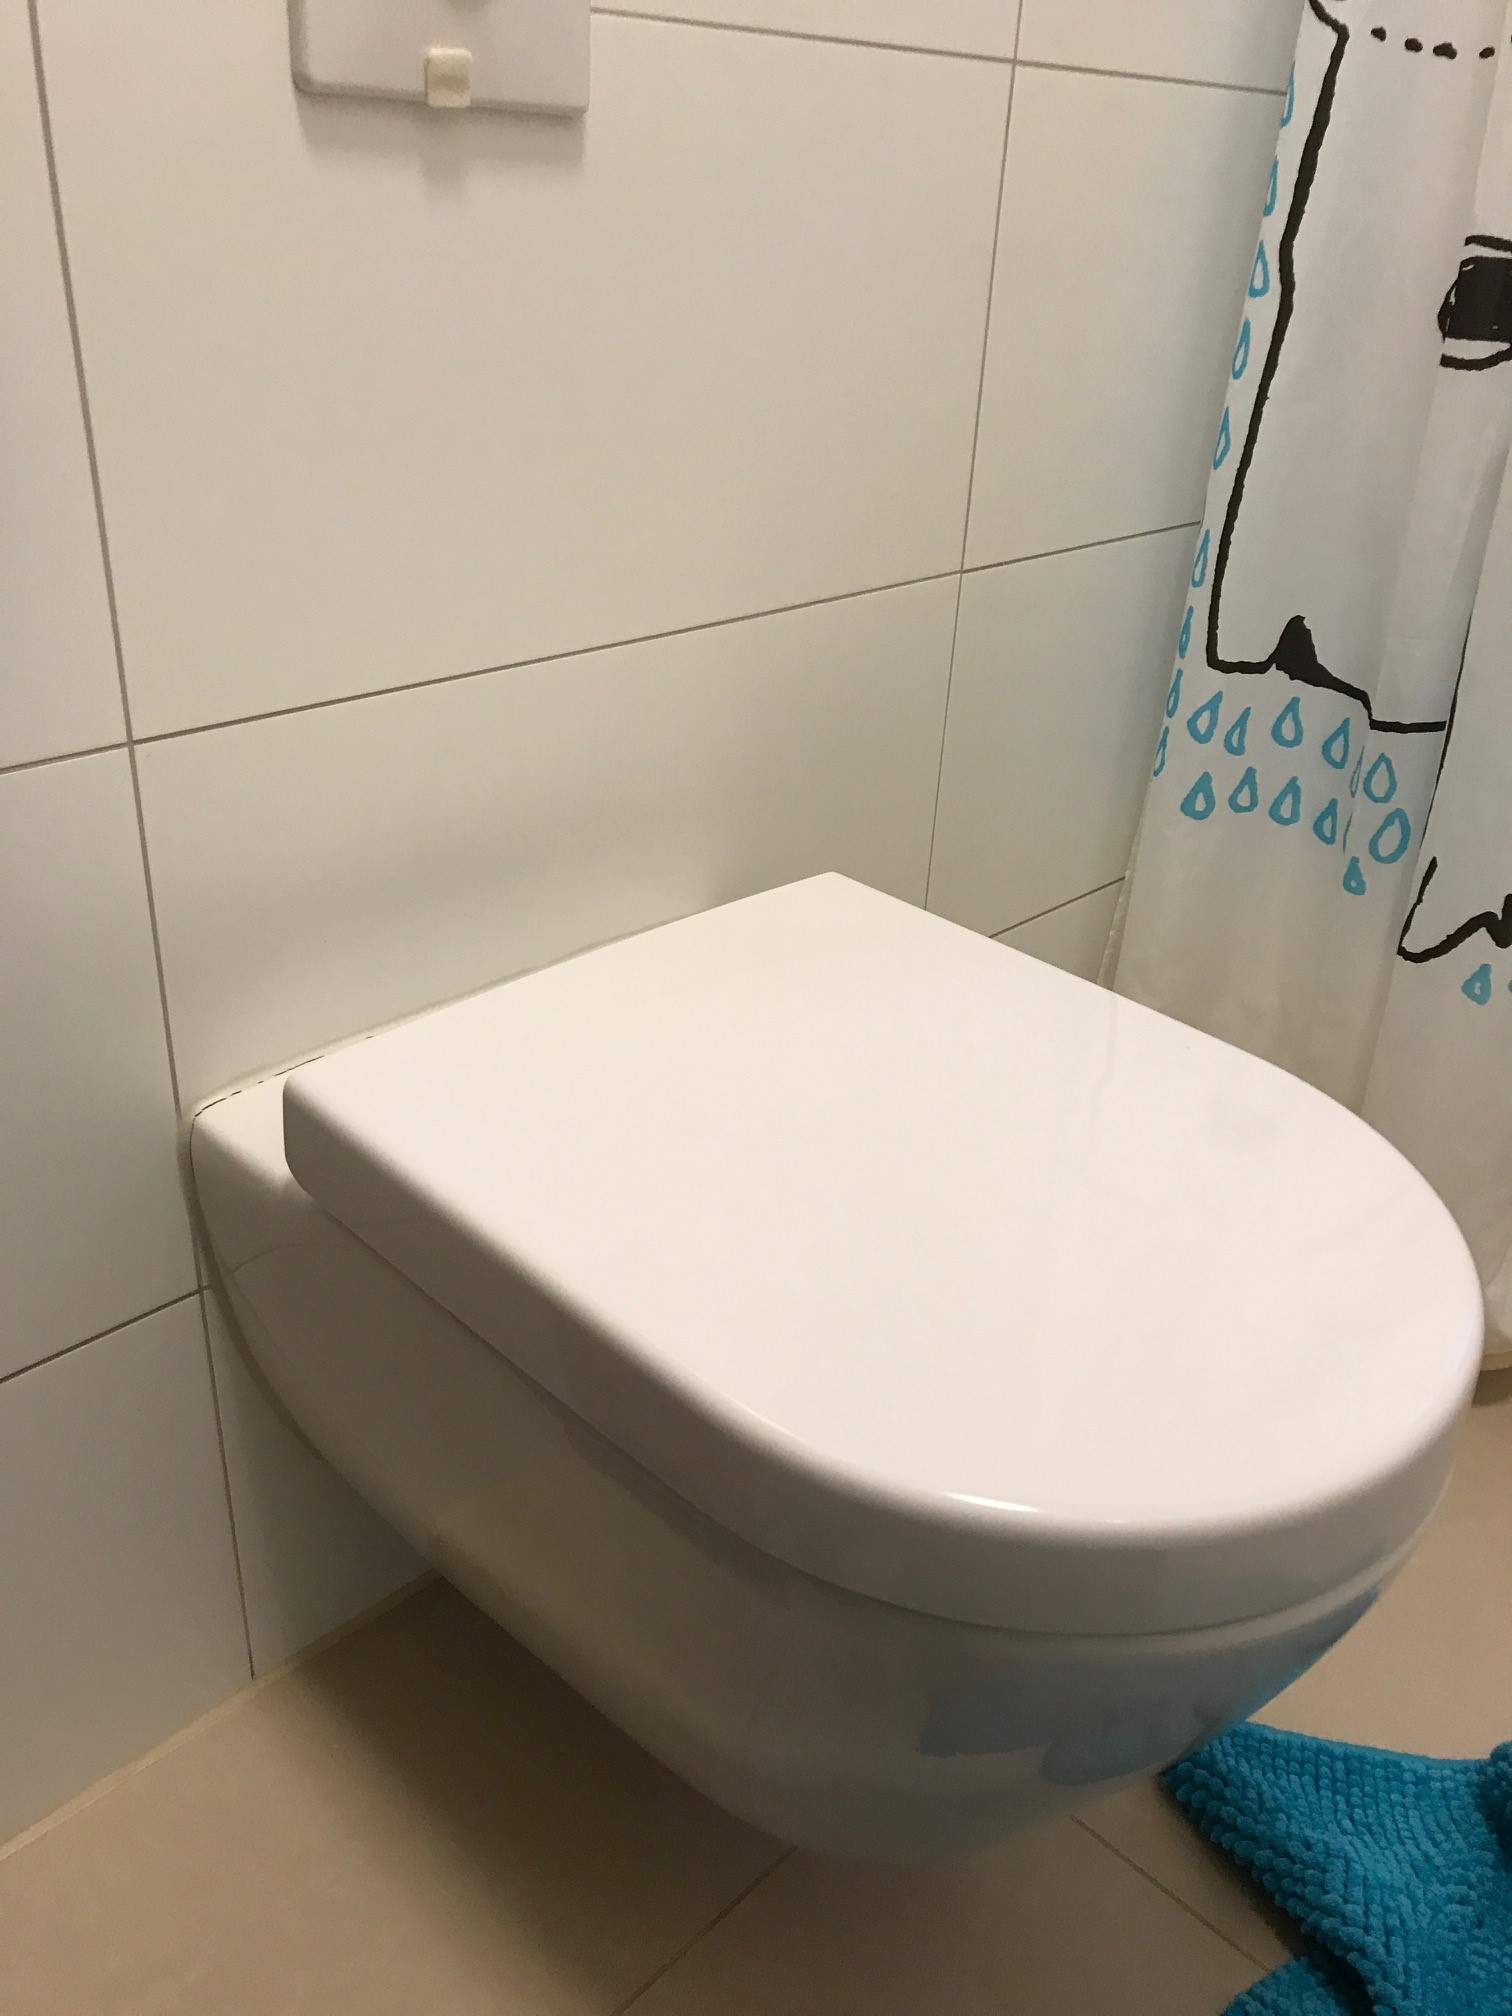 Hänge-WC tropft nach Spülung ? (Gesundheit und Medizin, Toilette, Sanitär)